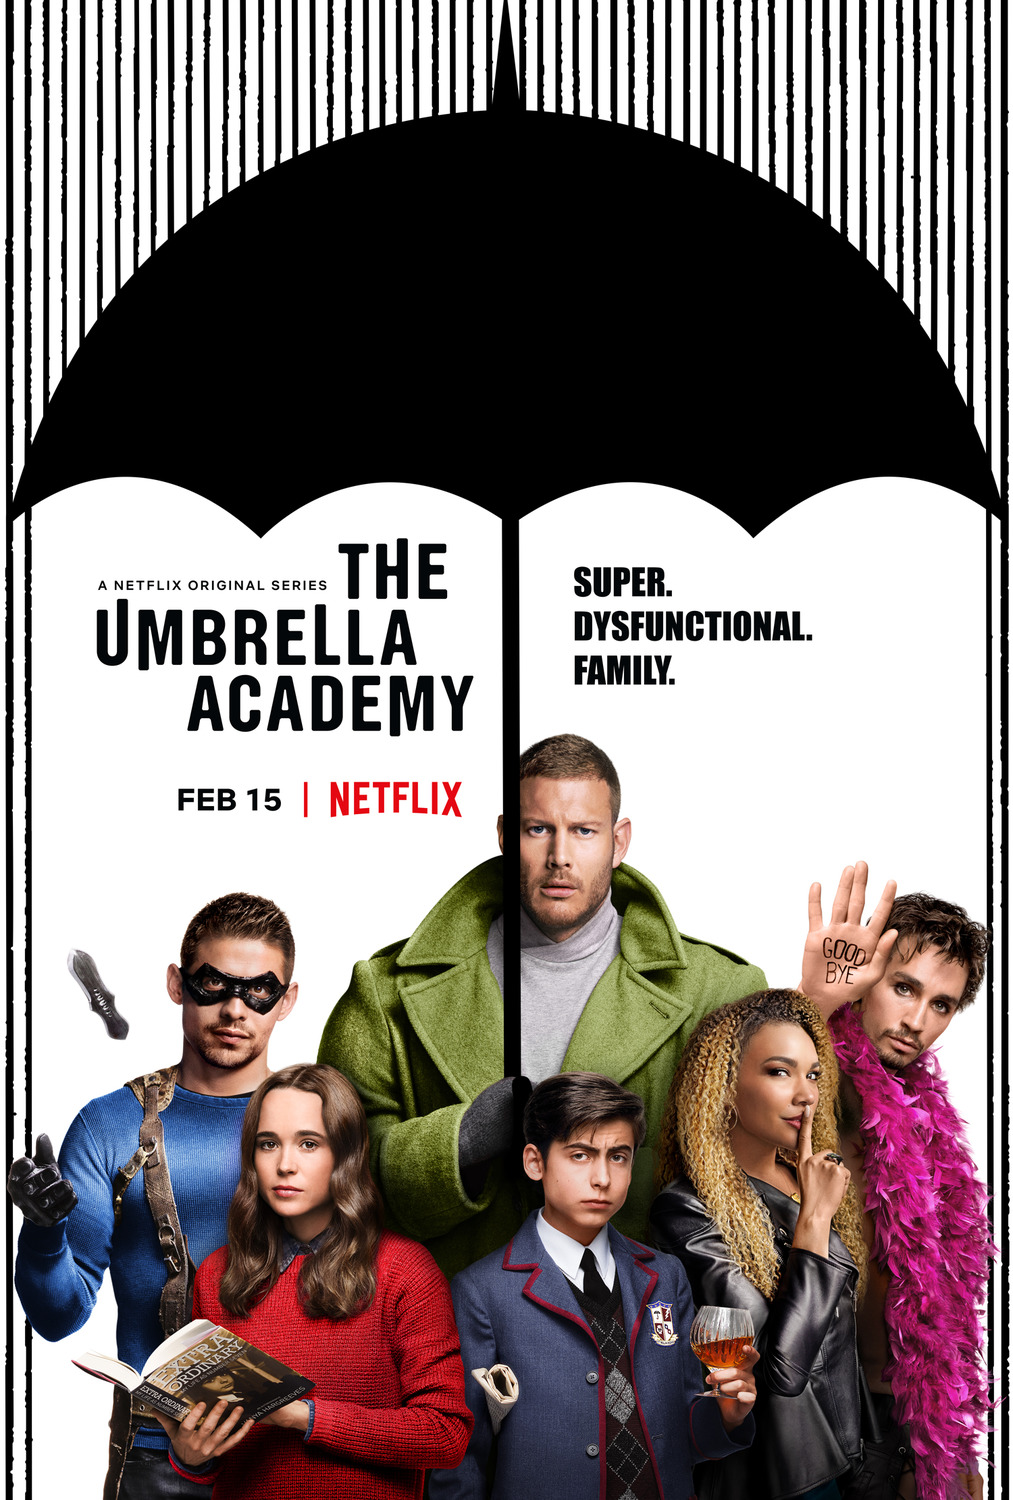 The Umbrella Academy review: heartwarming dysfunction